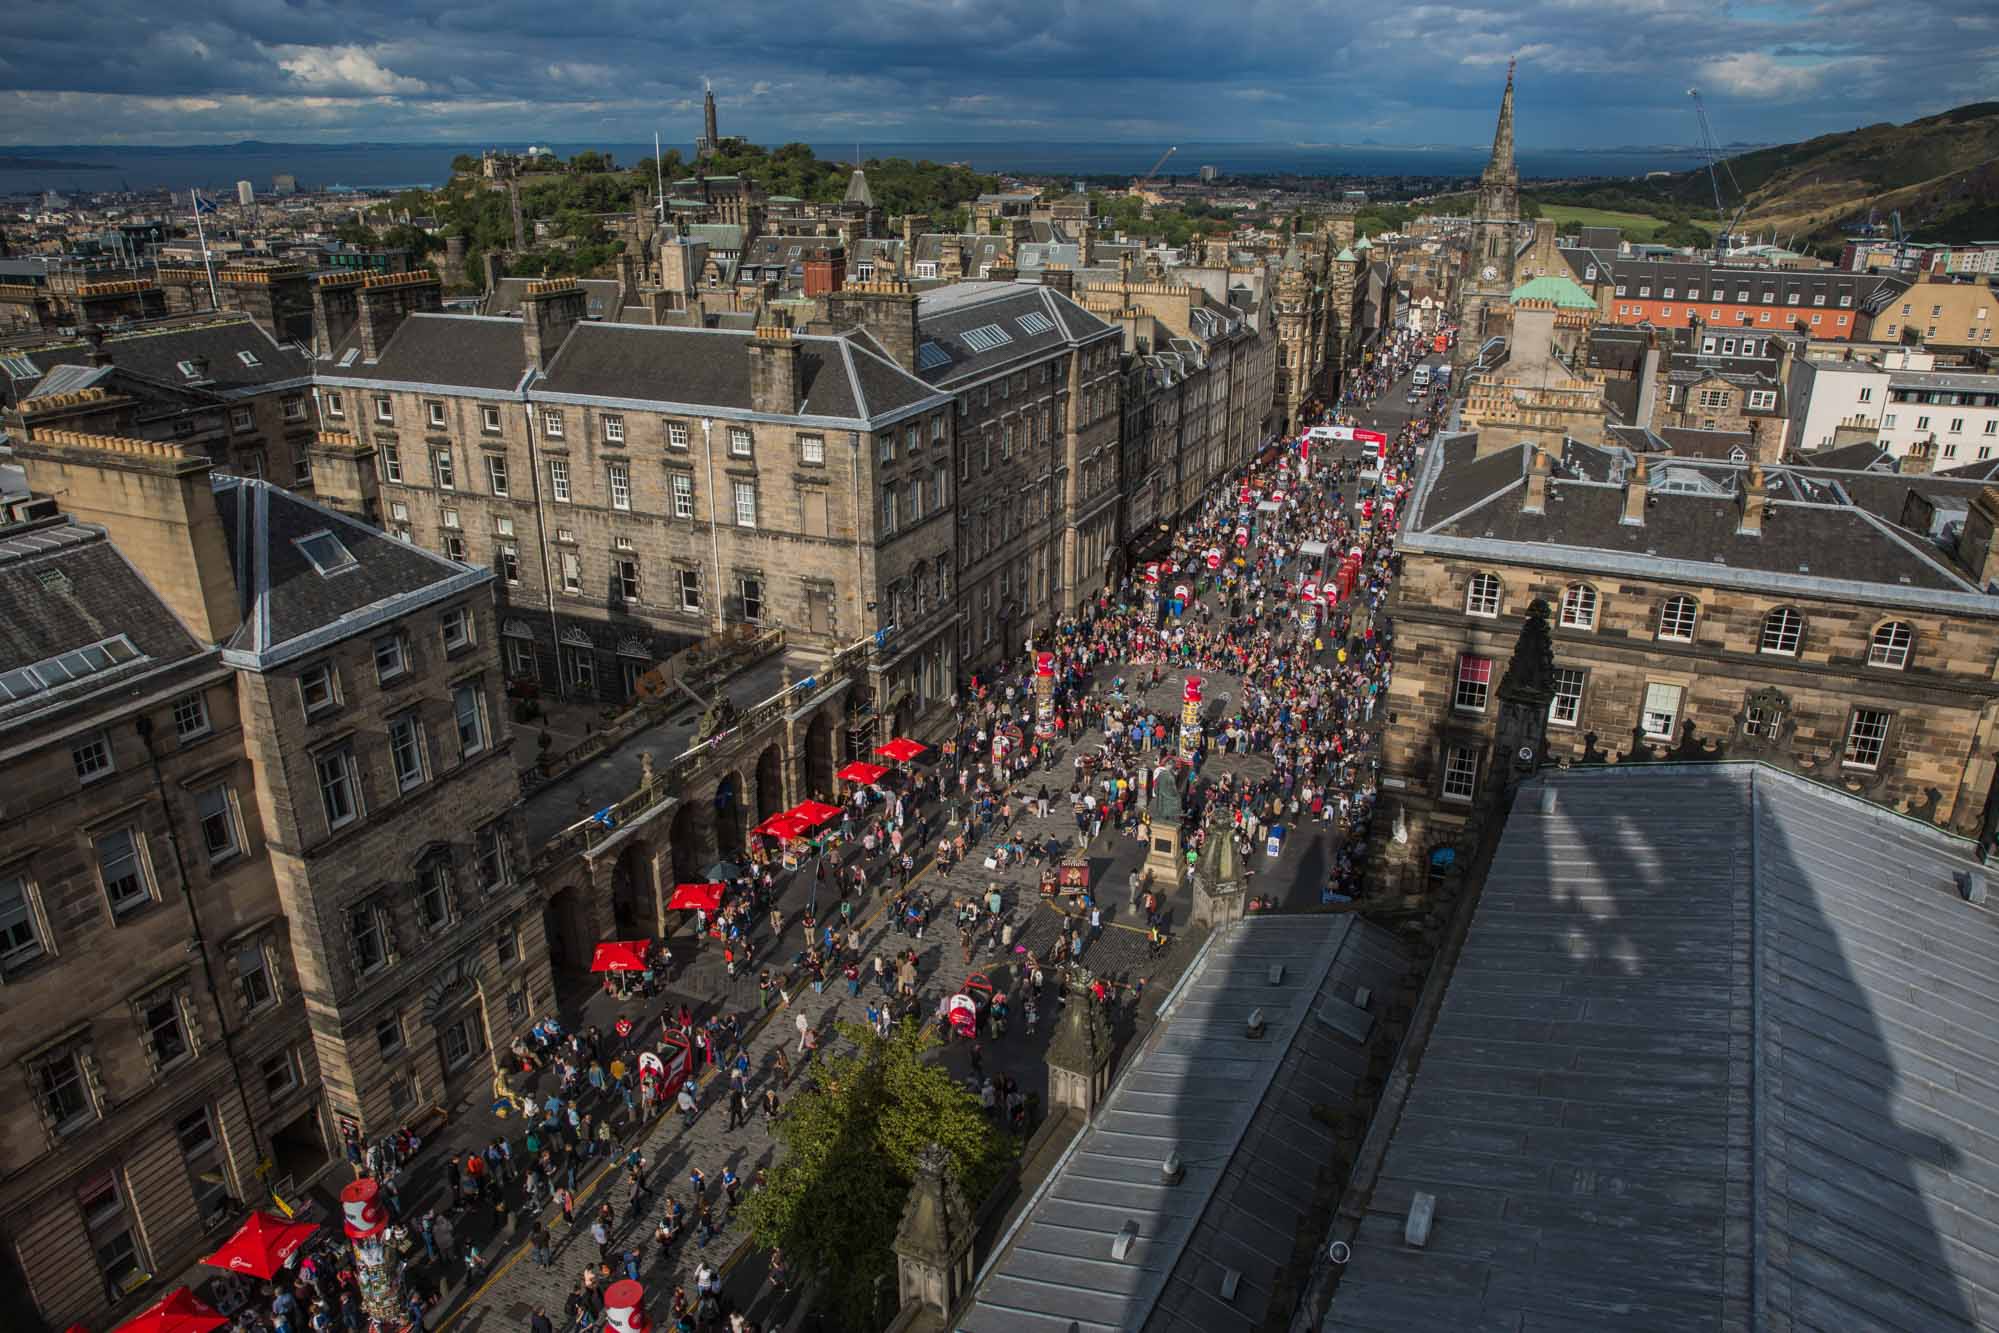 Top tips for visiting the Edinburgh Fringe Festival